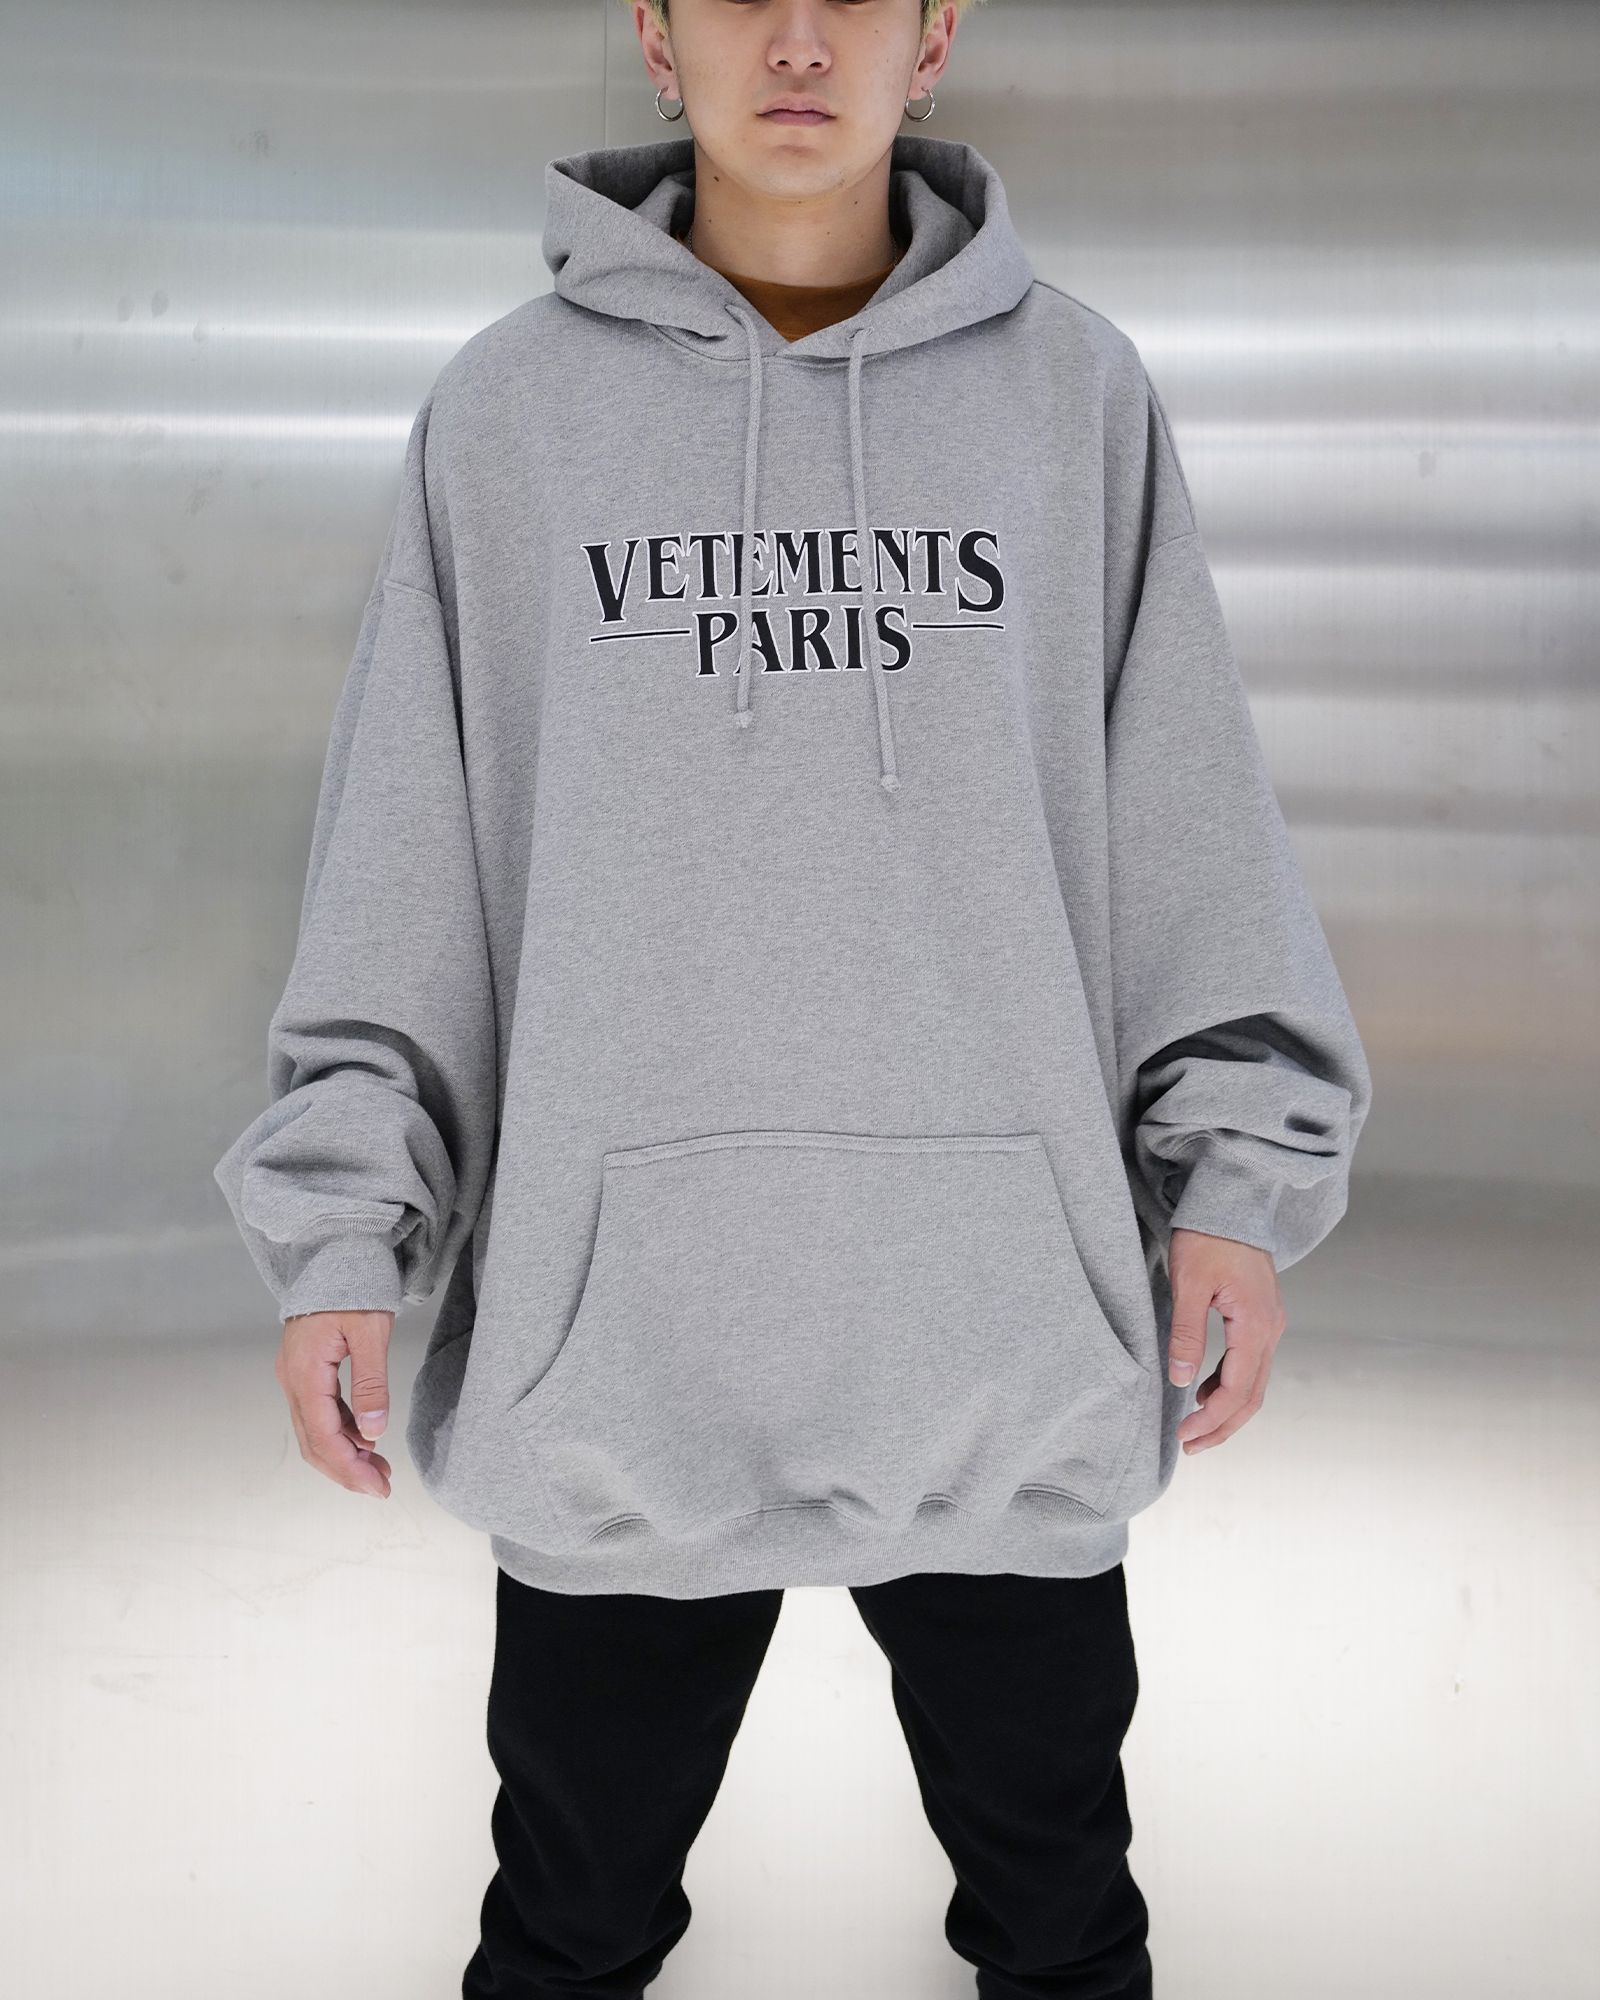 VETEMENTS - Vip crystal logo hoodie (プルオーバーパーカー) Black